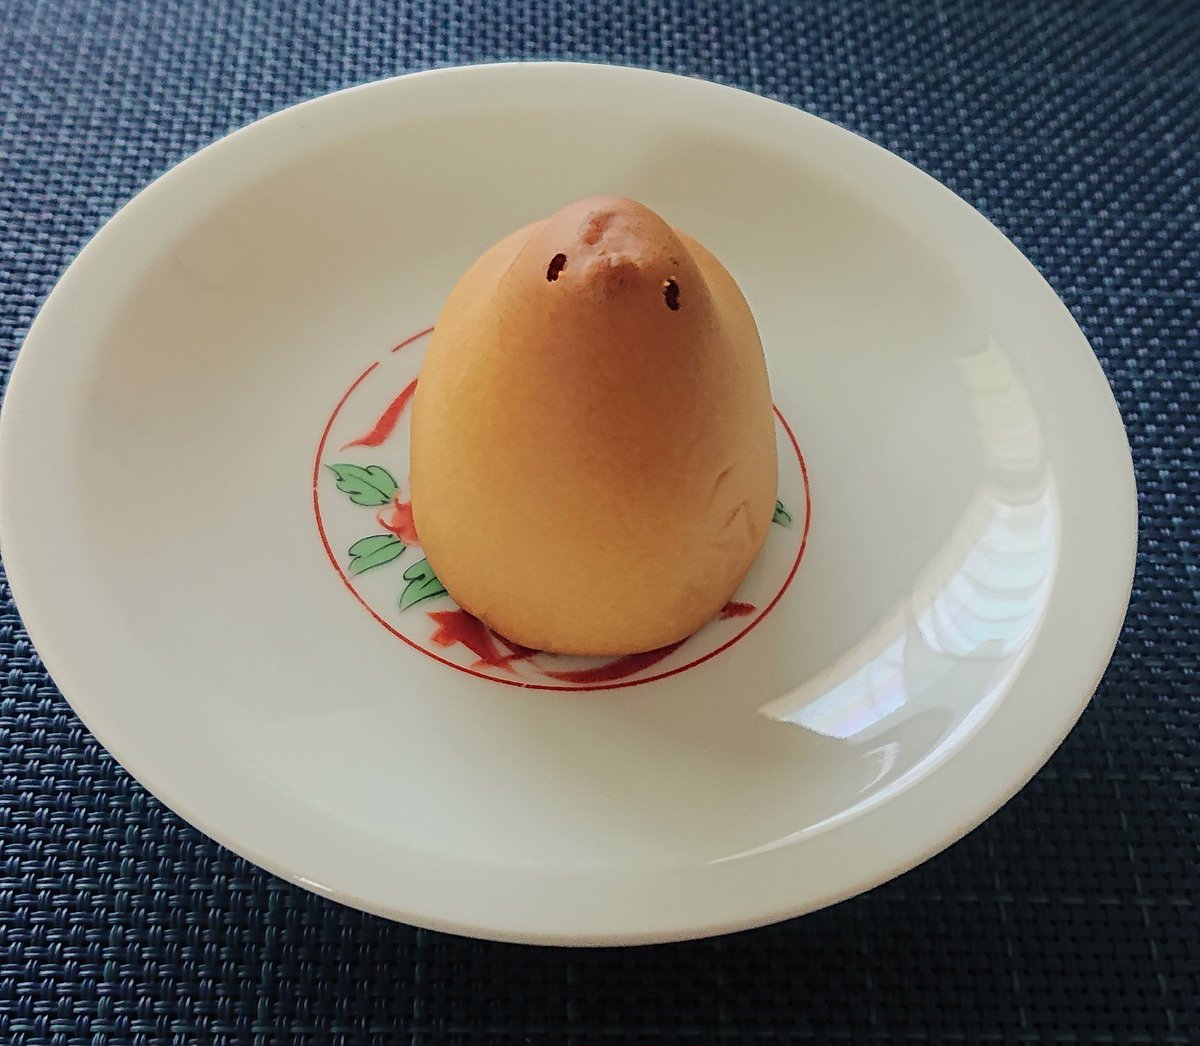 test ツイッターメディア - 昨日の帰り、東京駅で時間があったのでウロウロして…
久しぶりに、ひよ子饅頭が食べたくなって、連れて帰りました。
幼少期、東京に住んでたのに、ひよ子饅頭 よく家にあったんですよね…😄
こういうシンプルなお饅頭 好きなんですよ💕
朝から🐤ちゃんと見つめ合いました。 https://t.co/7XrqTj9kXn